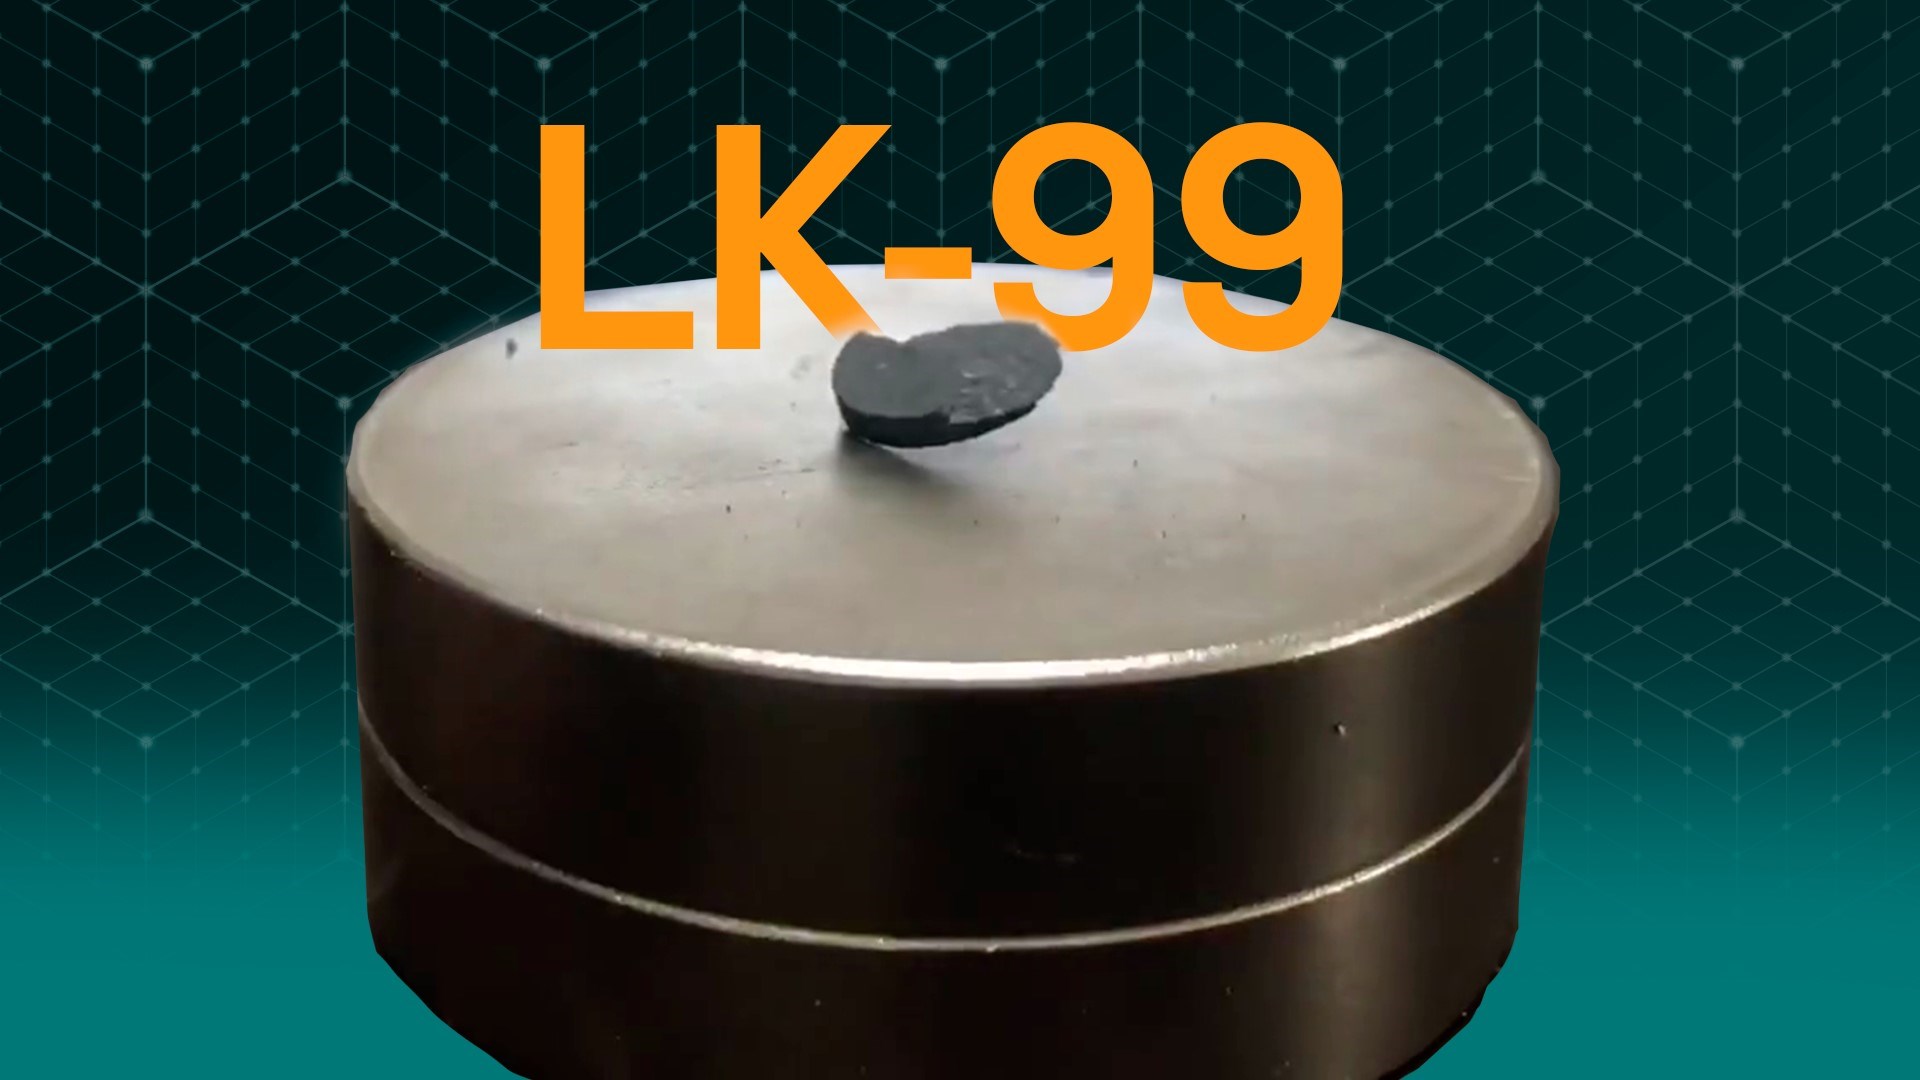 LK-99 süper iletken rüyası bitti